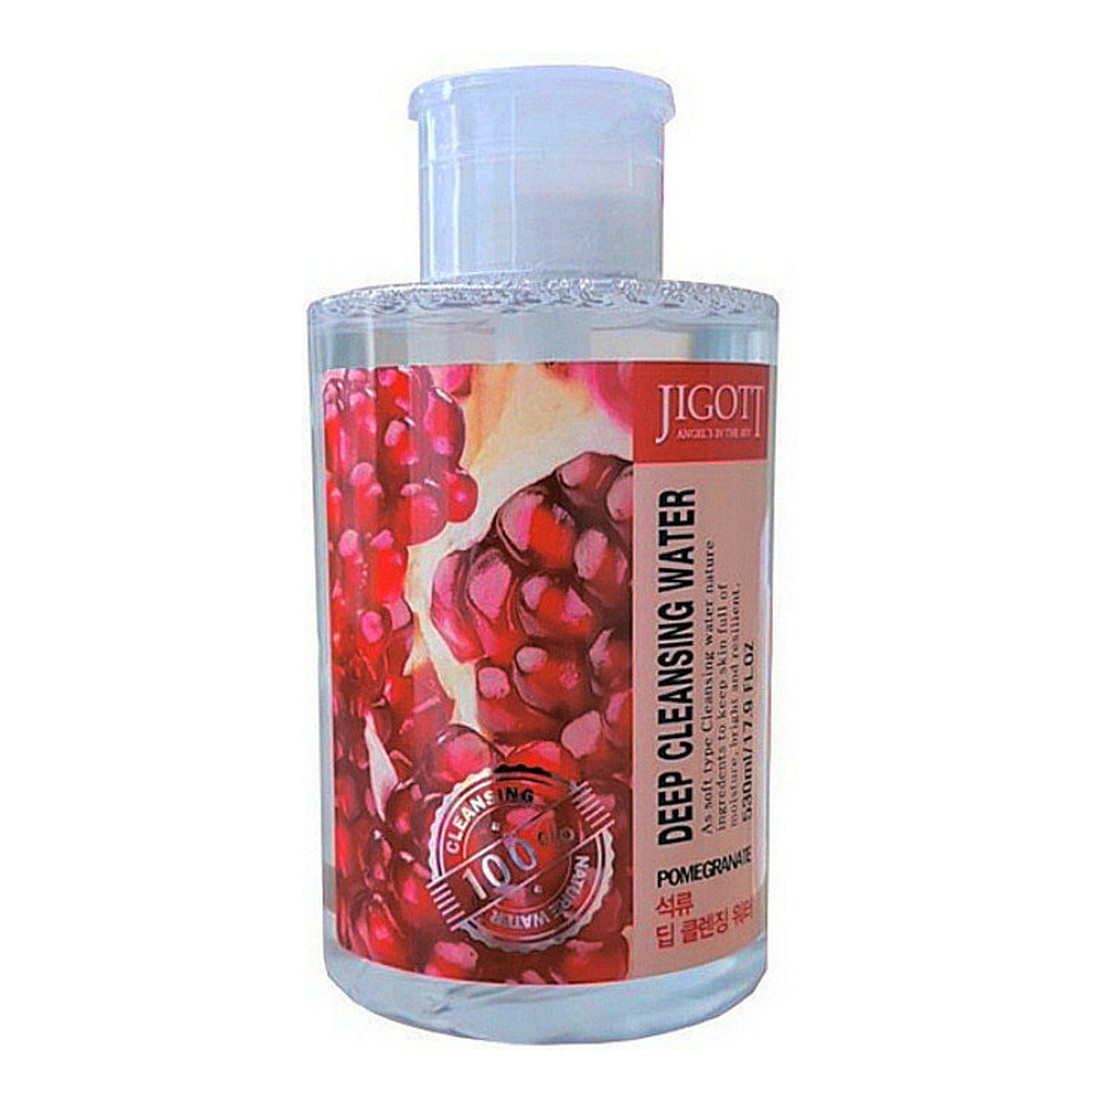 Очищающая вода для лица. [Jigott] жидкость для снятия макияжа гранат Pomegranate Deep Cleansing Water, 530 мл. Jigott вода очищающая с экстрактом граната Deep Cleansing Water Pomegranate.